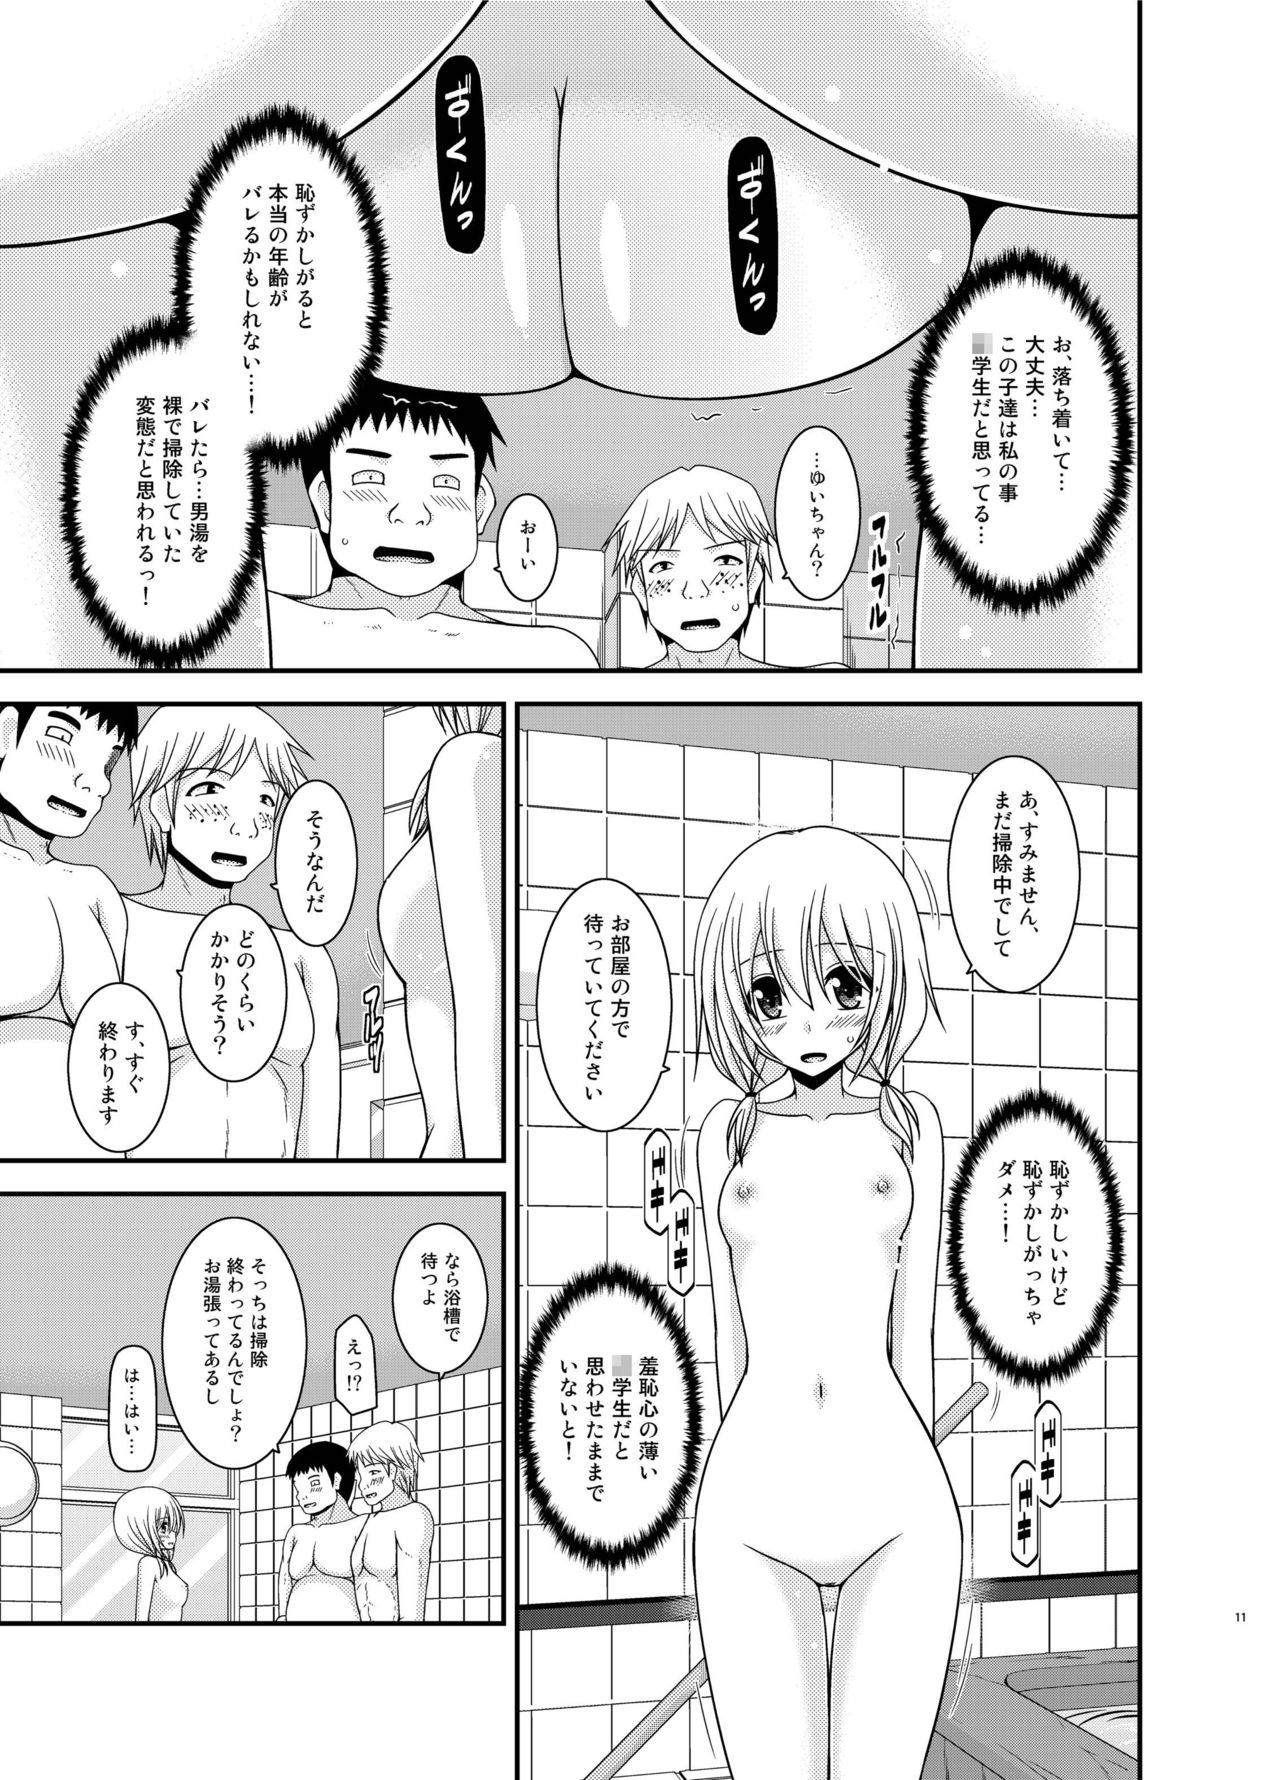 [valssu (Charu)] Roshutsu Shoujo Nikki 18 Satsume [Digital] page 11 full